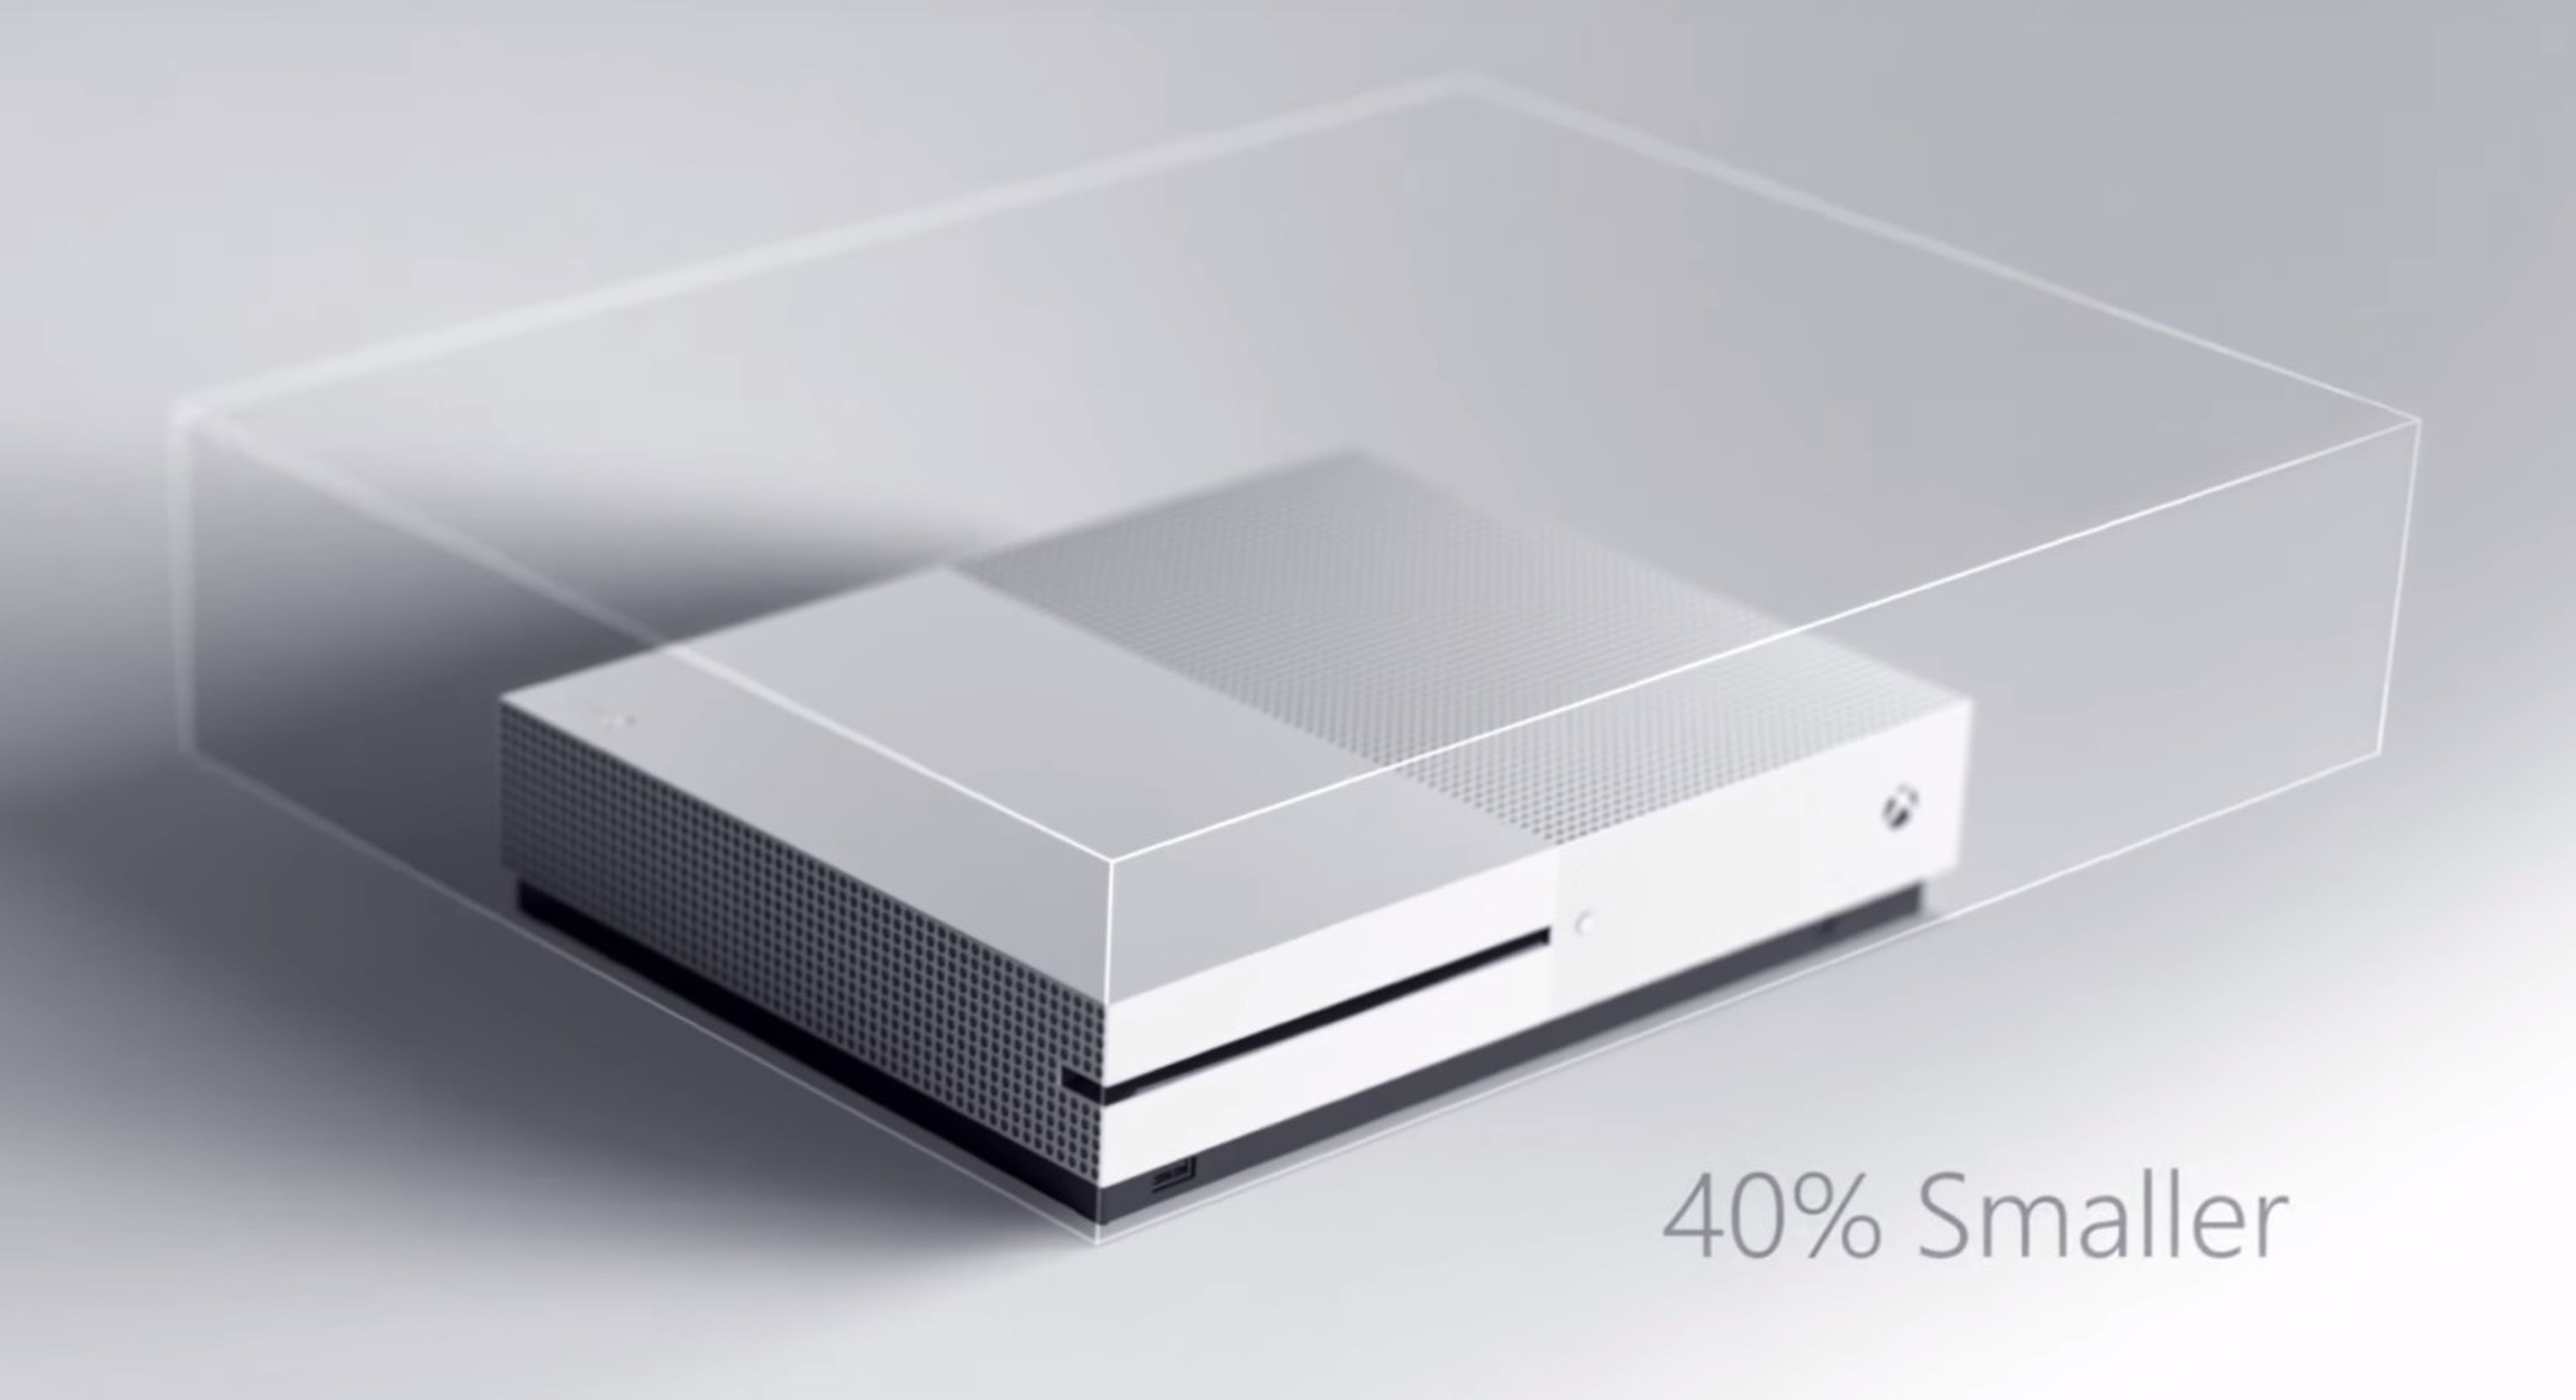 Xbox One S - Claves de la nueva consola Slim de Microsoft